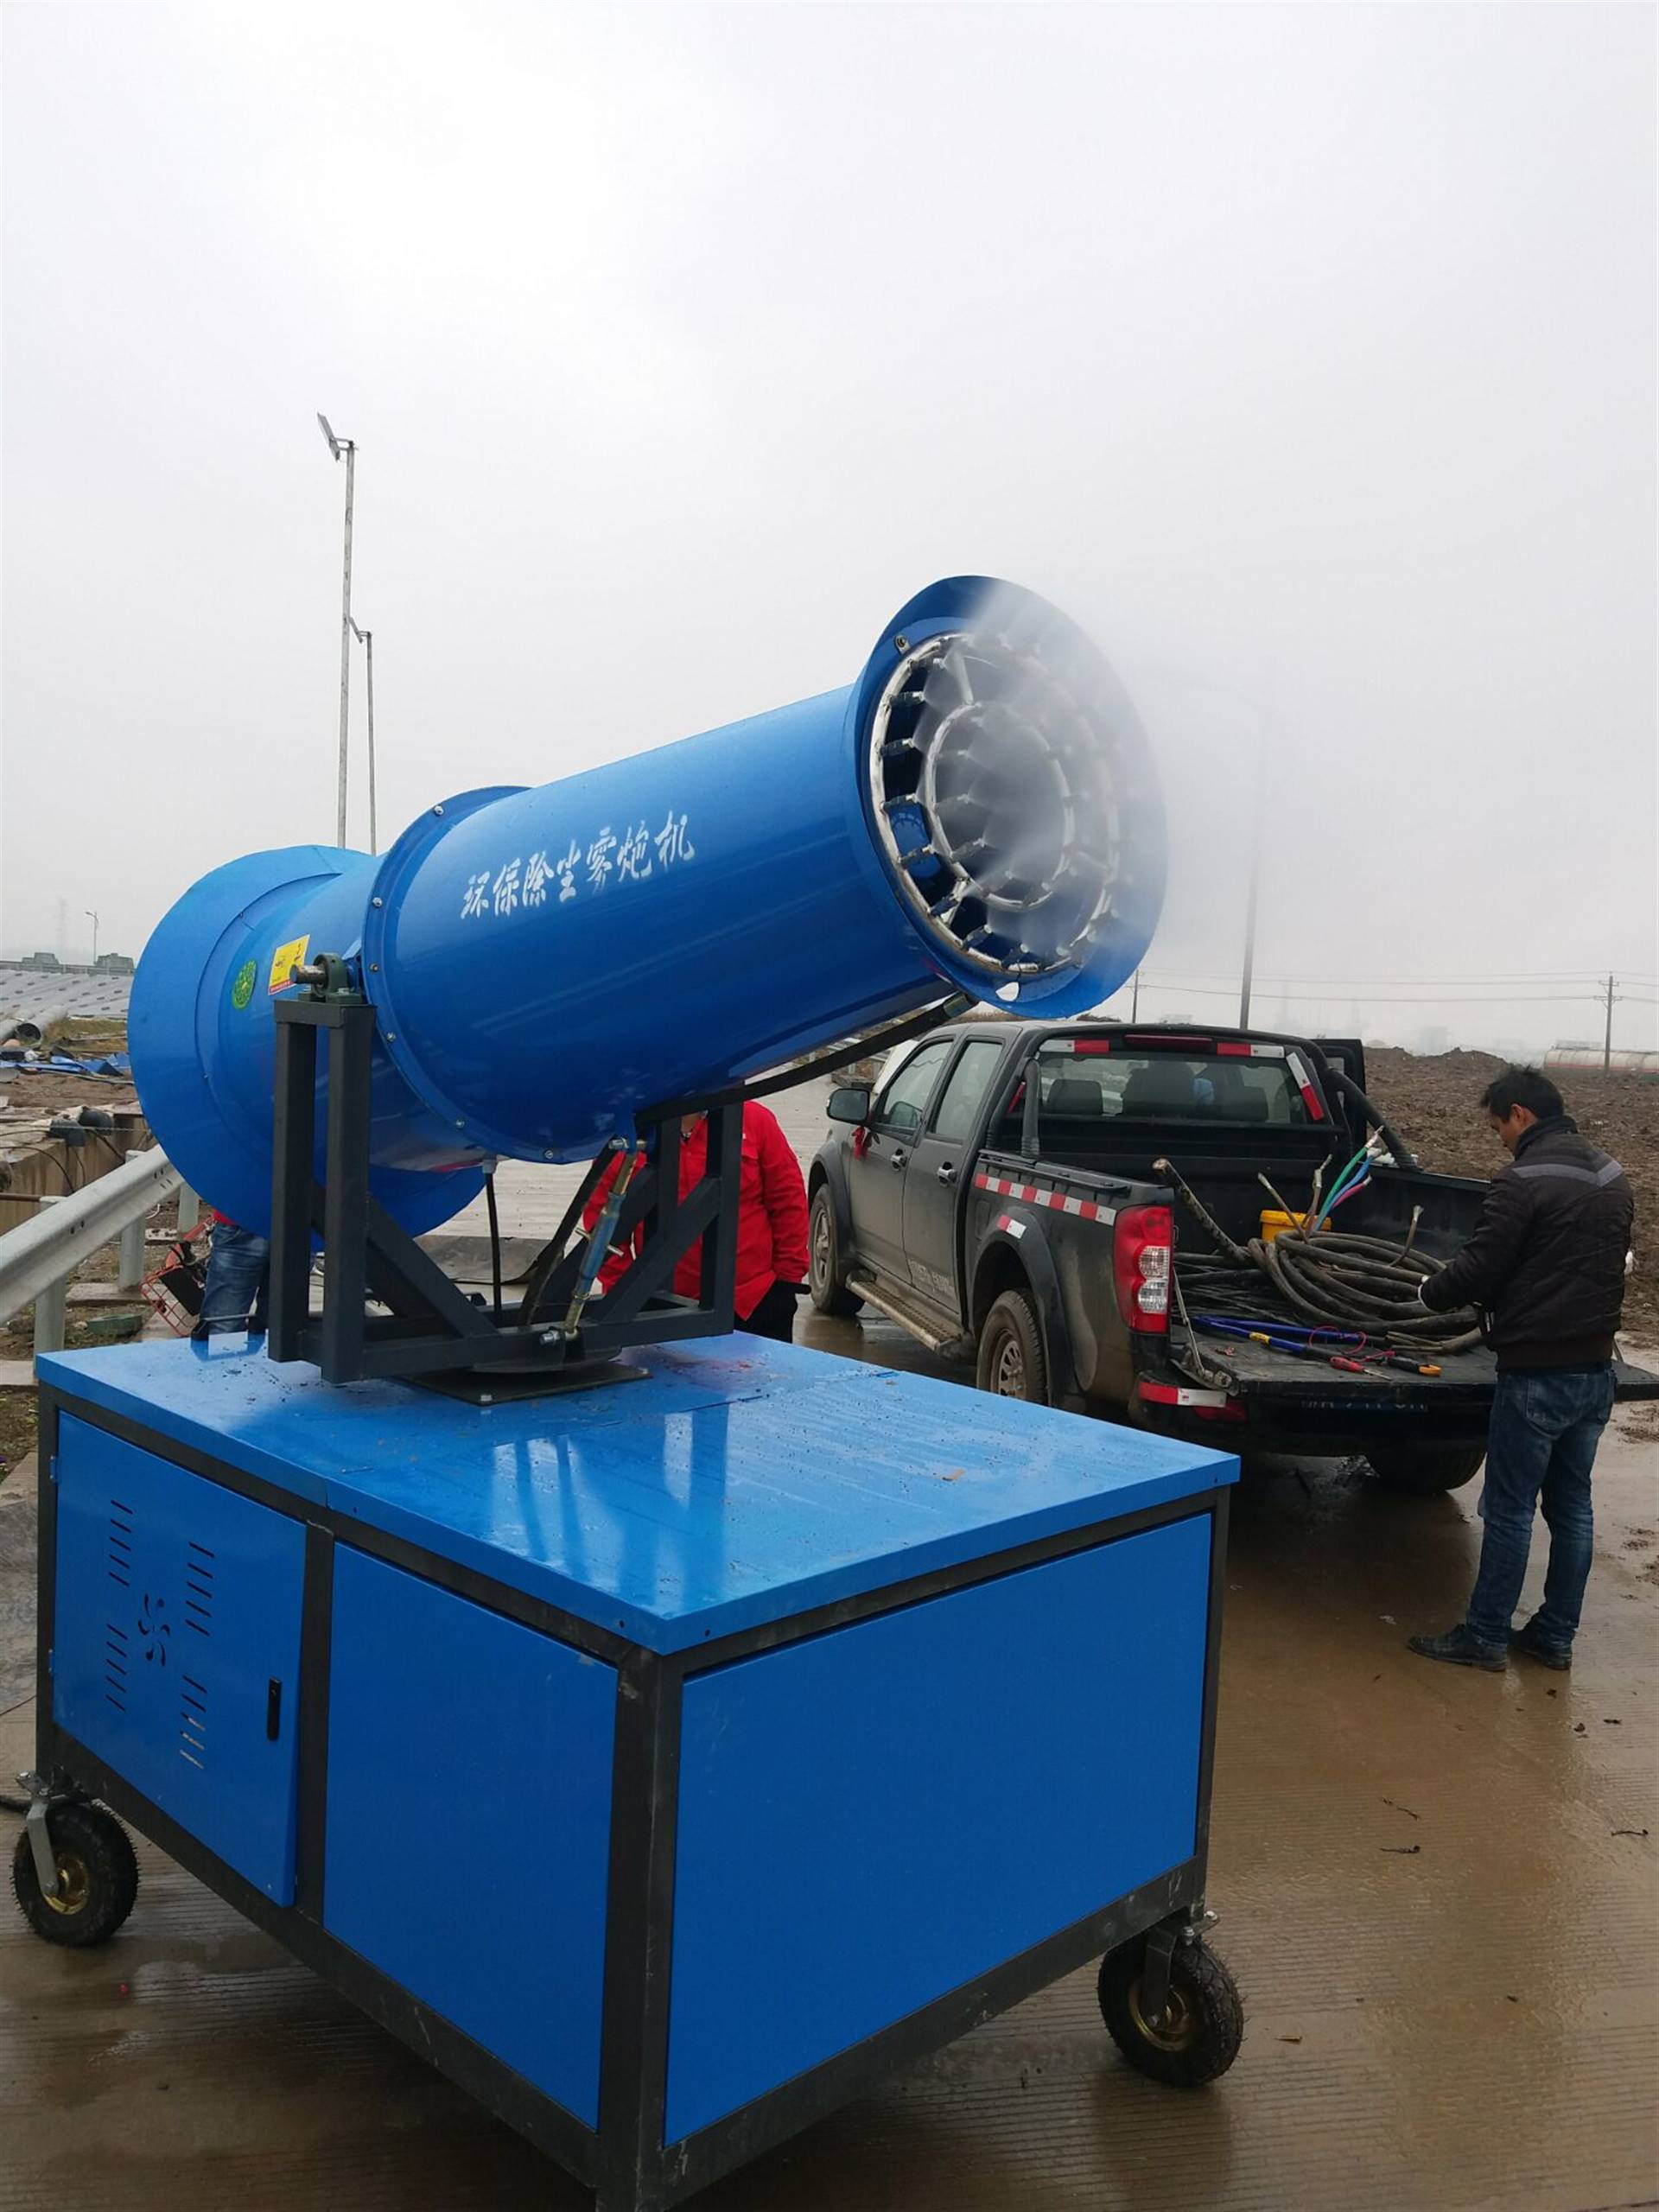 新型移动式车载雾炮机 30型雾炮机 北京雾炮机哪里有卖的